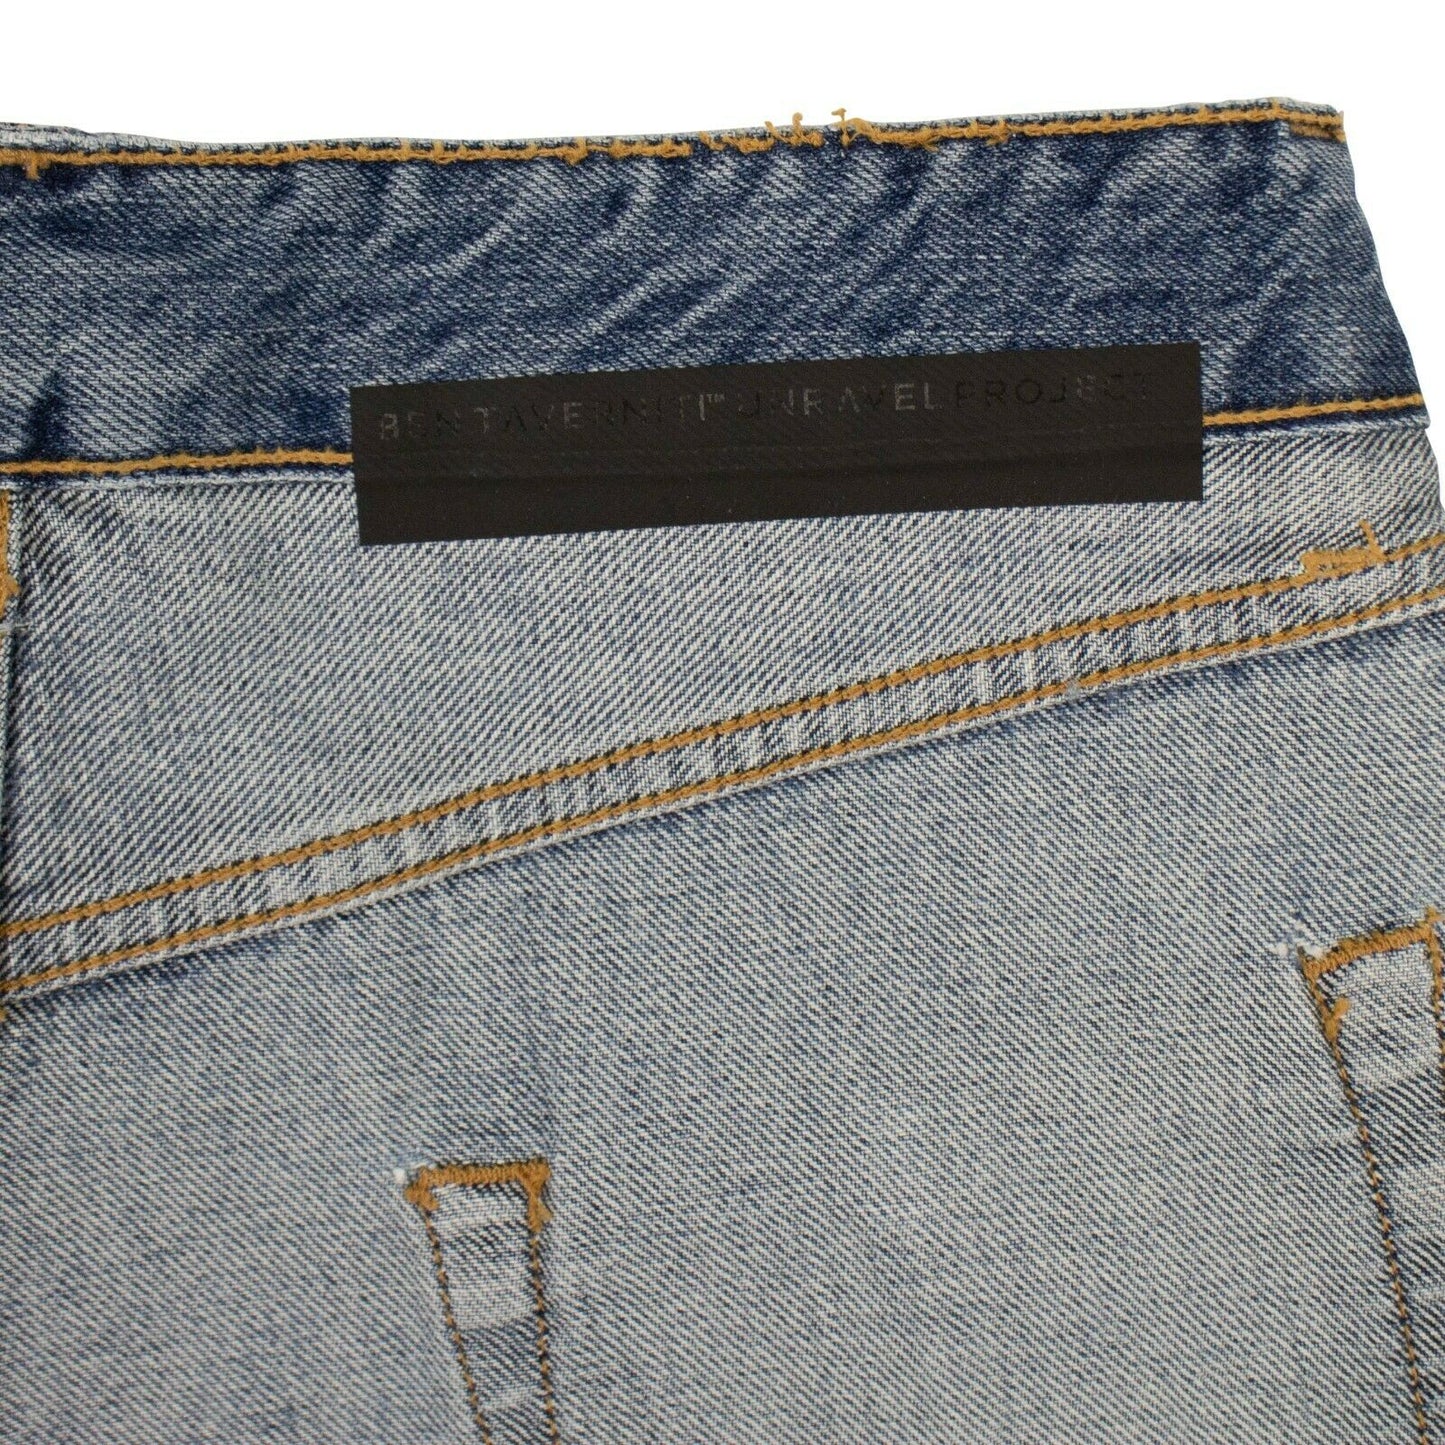 Unravel Project Reverse Denim Short Pants - Blue